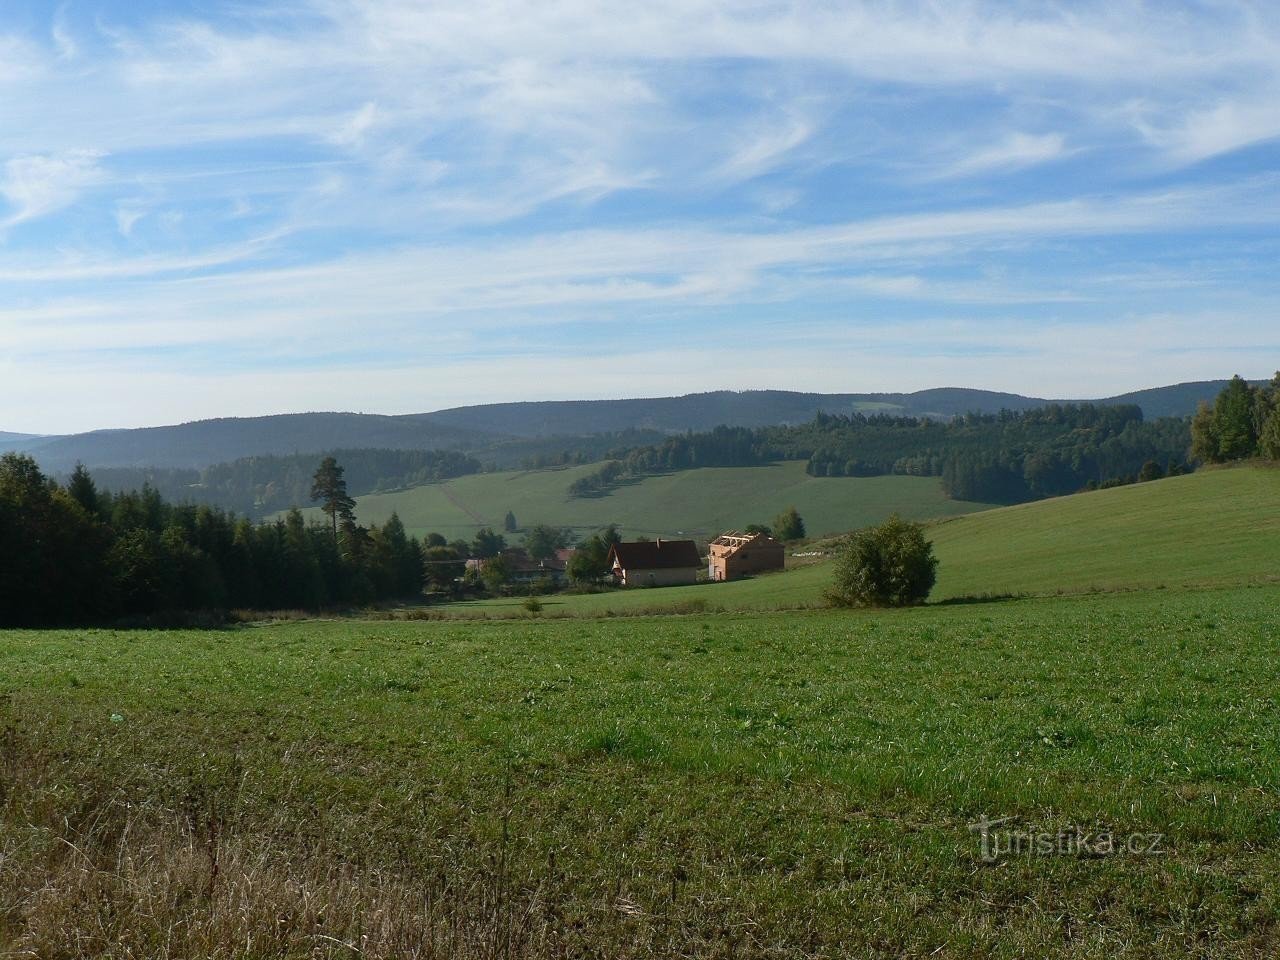 Libětice från norr, Šumava i bakgrunden